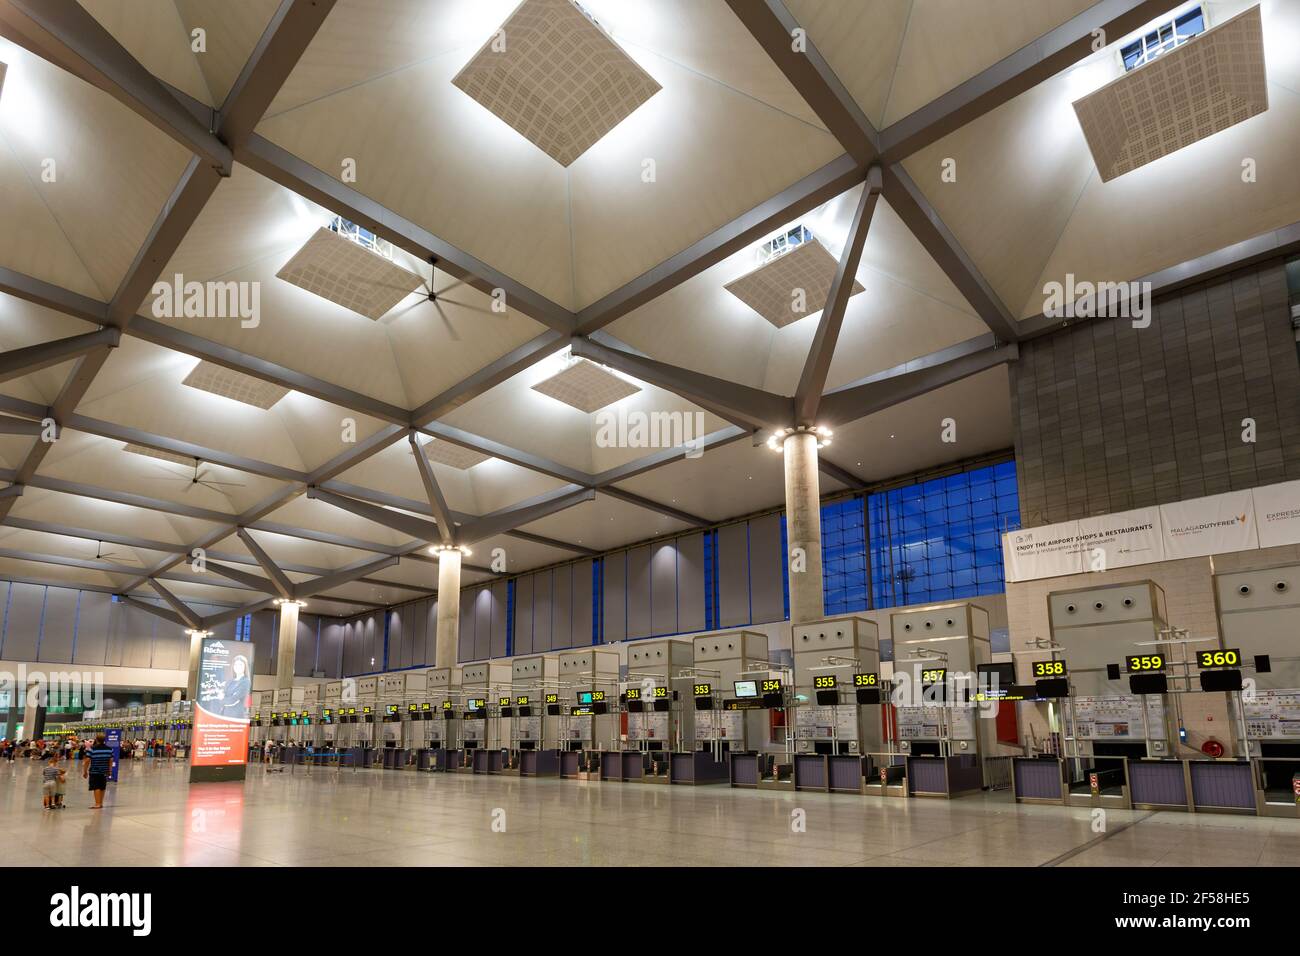 Malaga, Spain - July 28, 2018: Terminal 3 at Malaga airport in Spain. Stock Photo